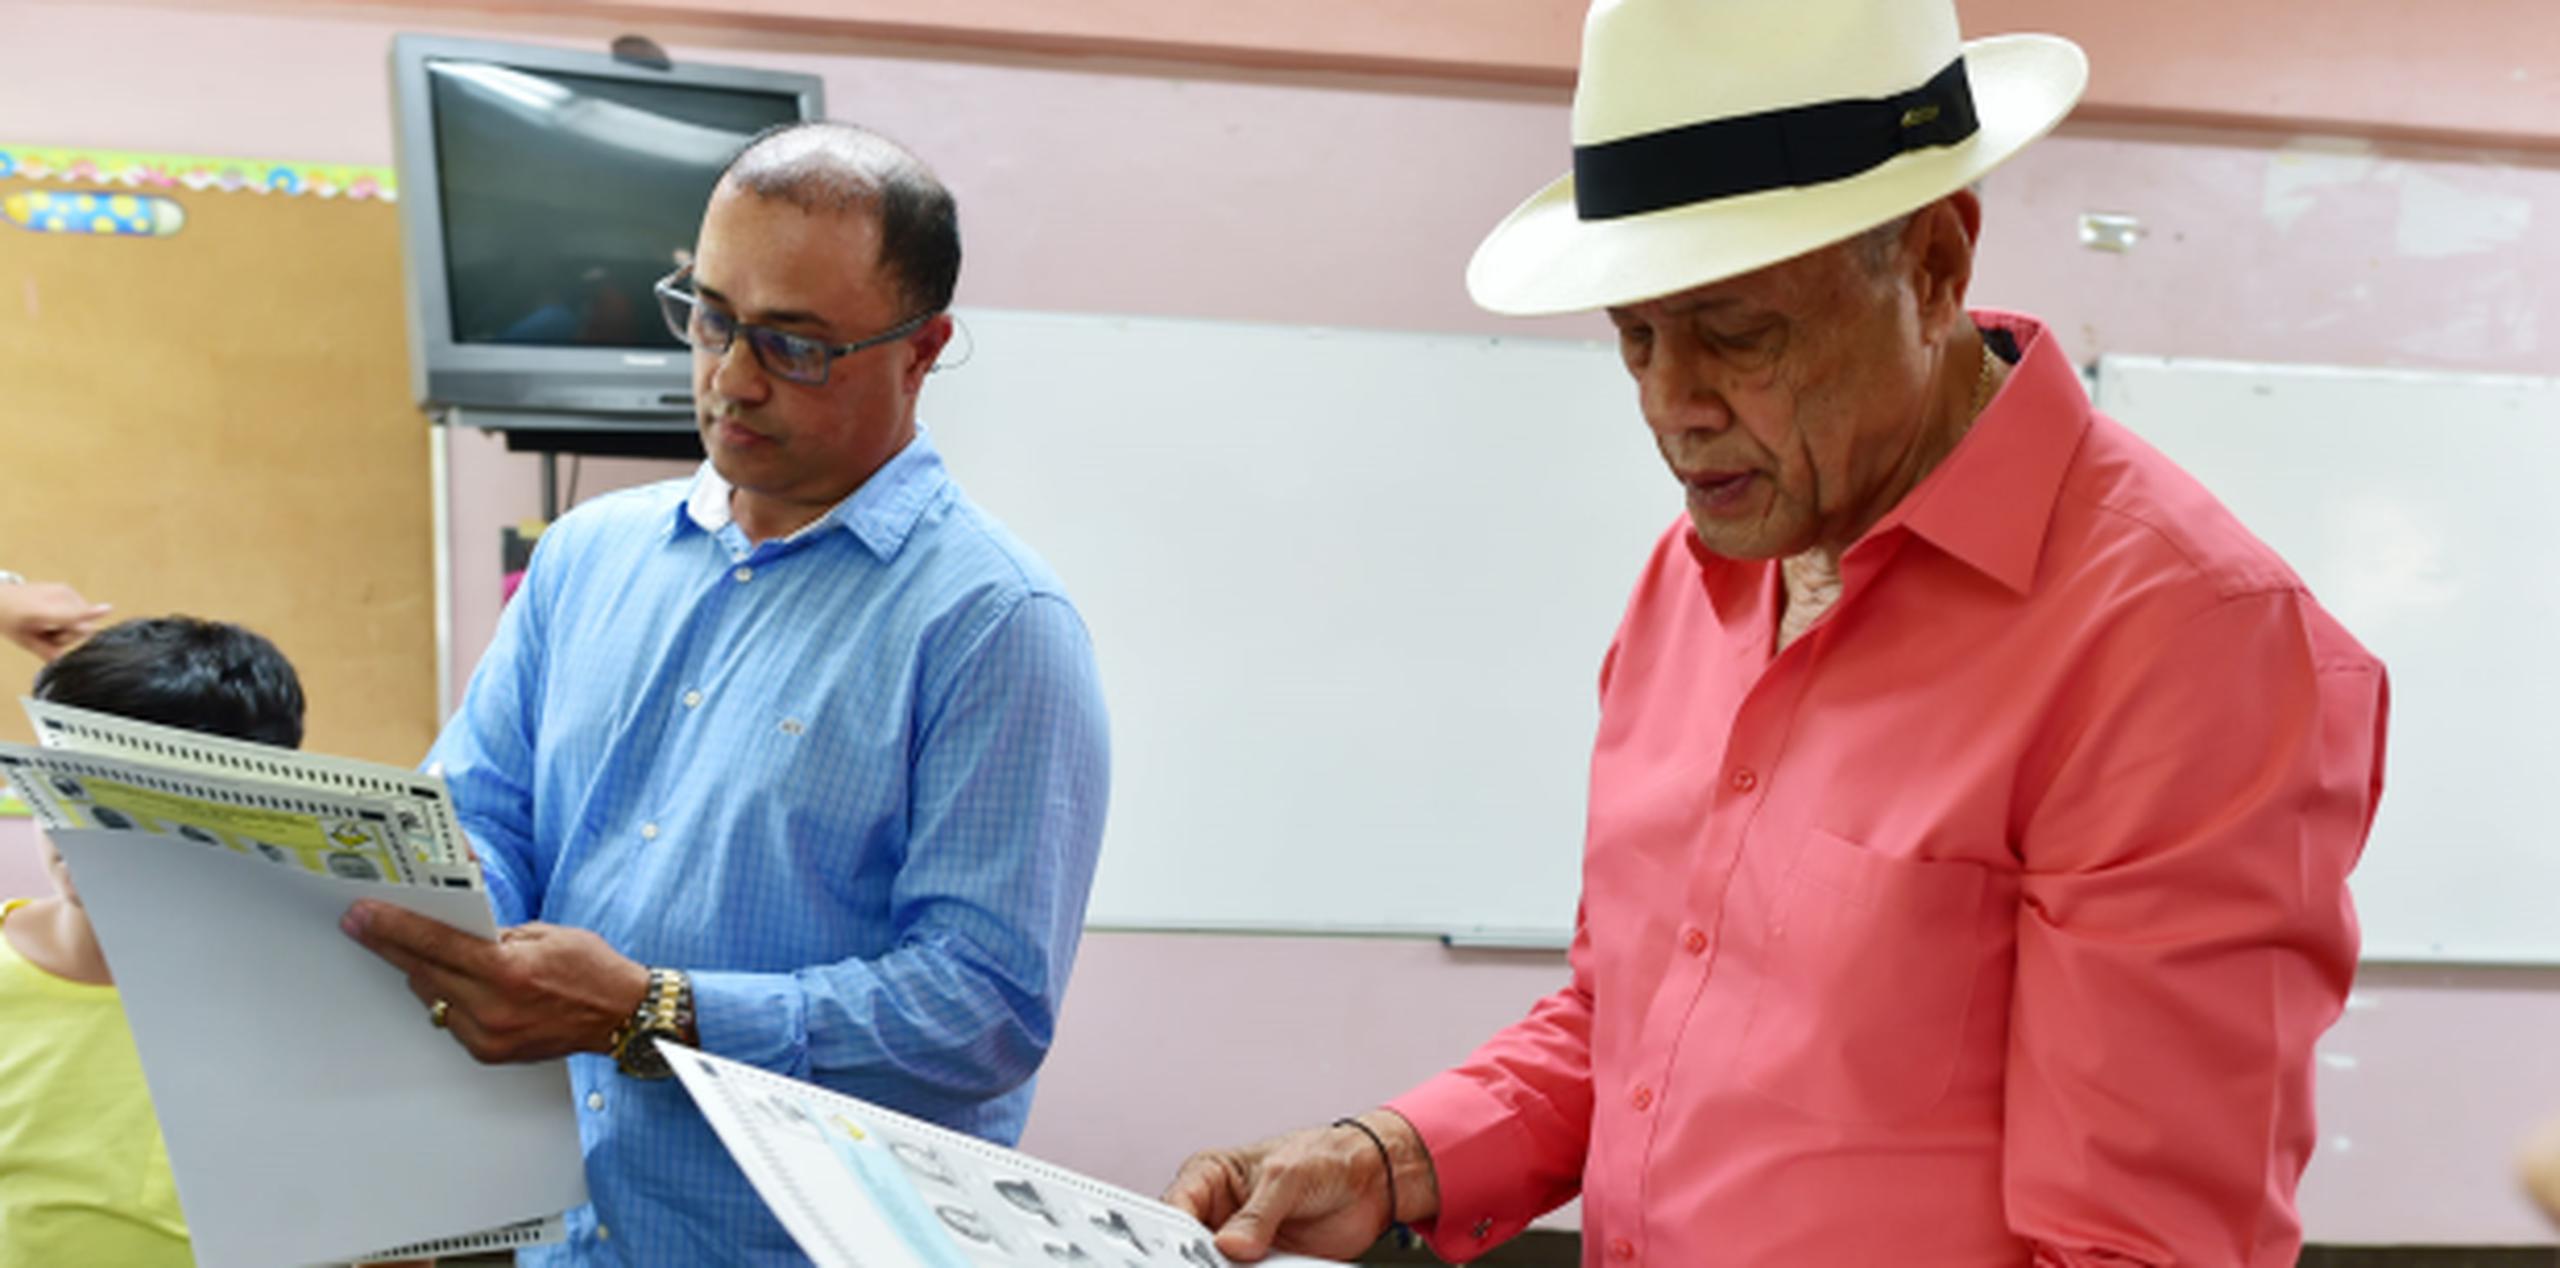 José “Chemo” Soto junto a su hijo, José, cuando realizaron su voto. (Luis Alcalé del Olmo)